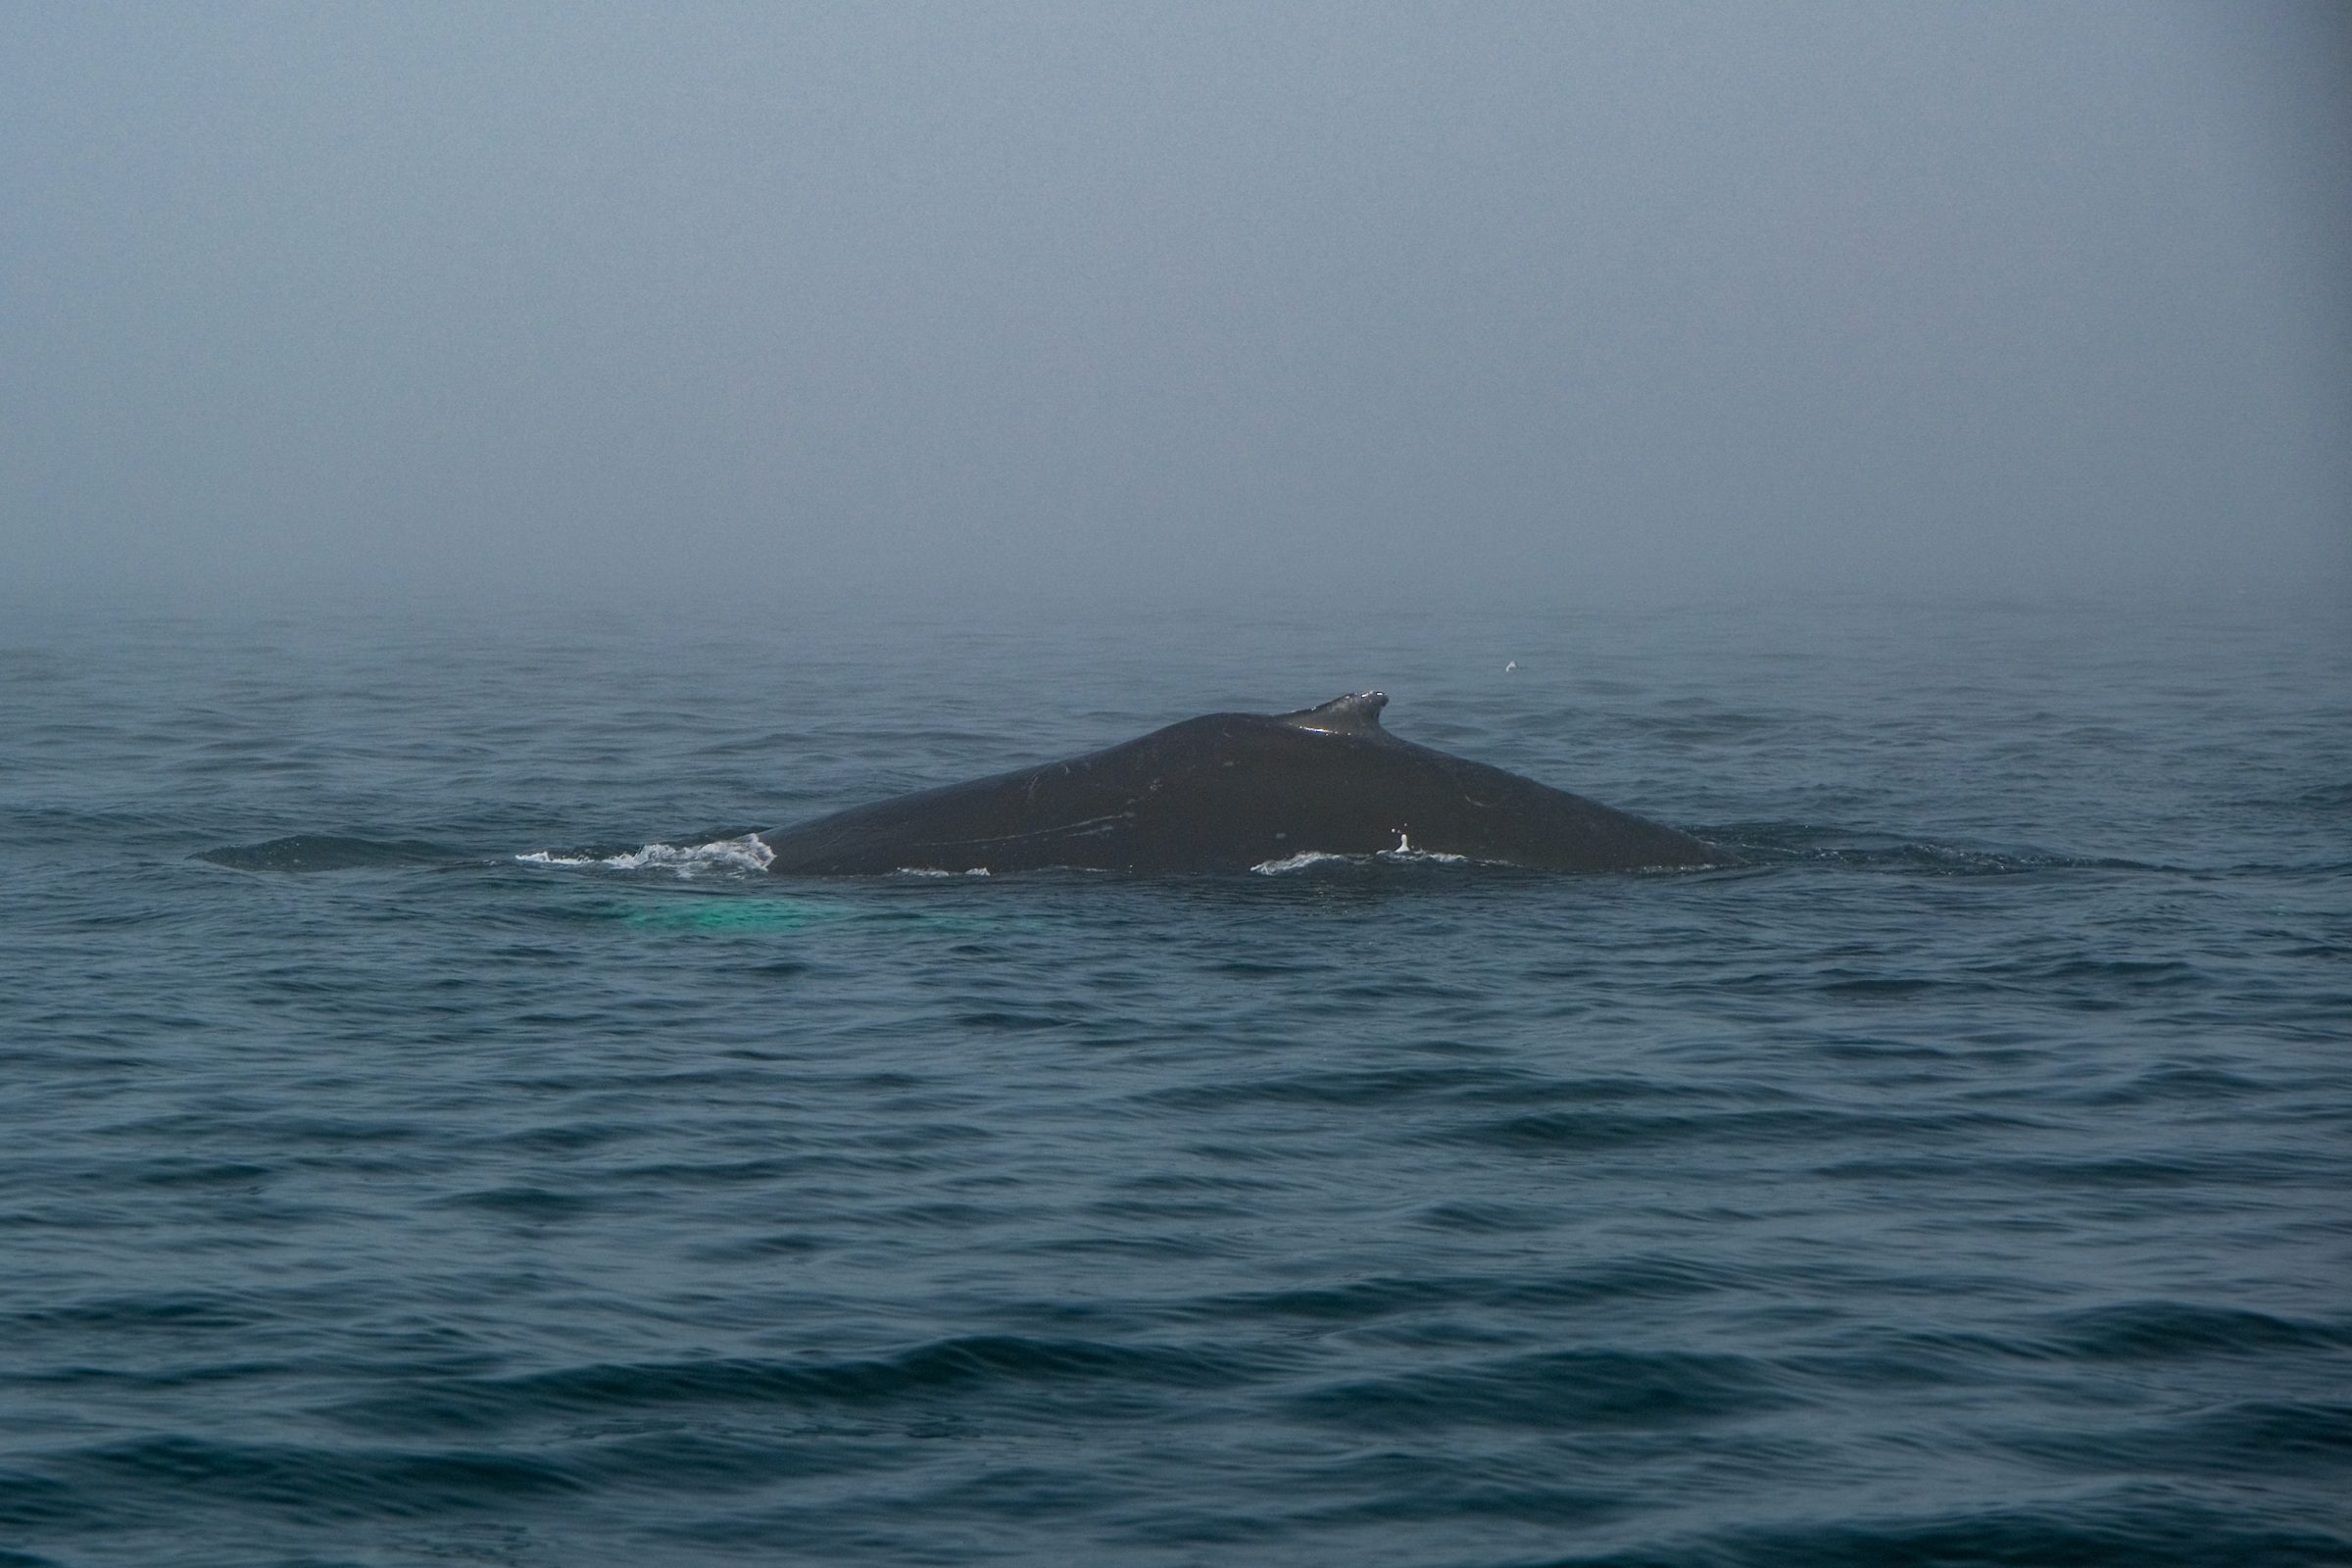 ザトウクジラが深く潜ろうとする様子がカーブした背中から見える